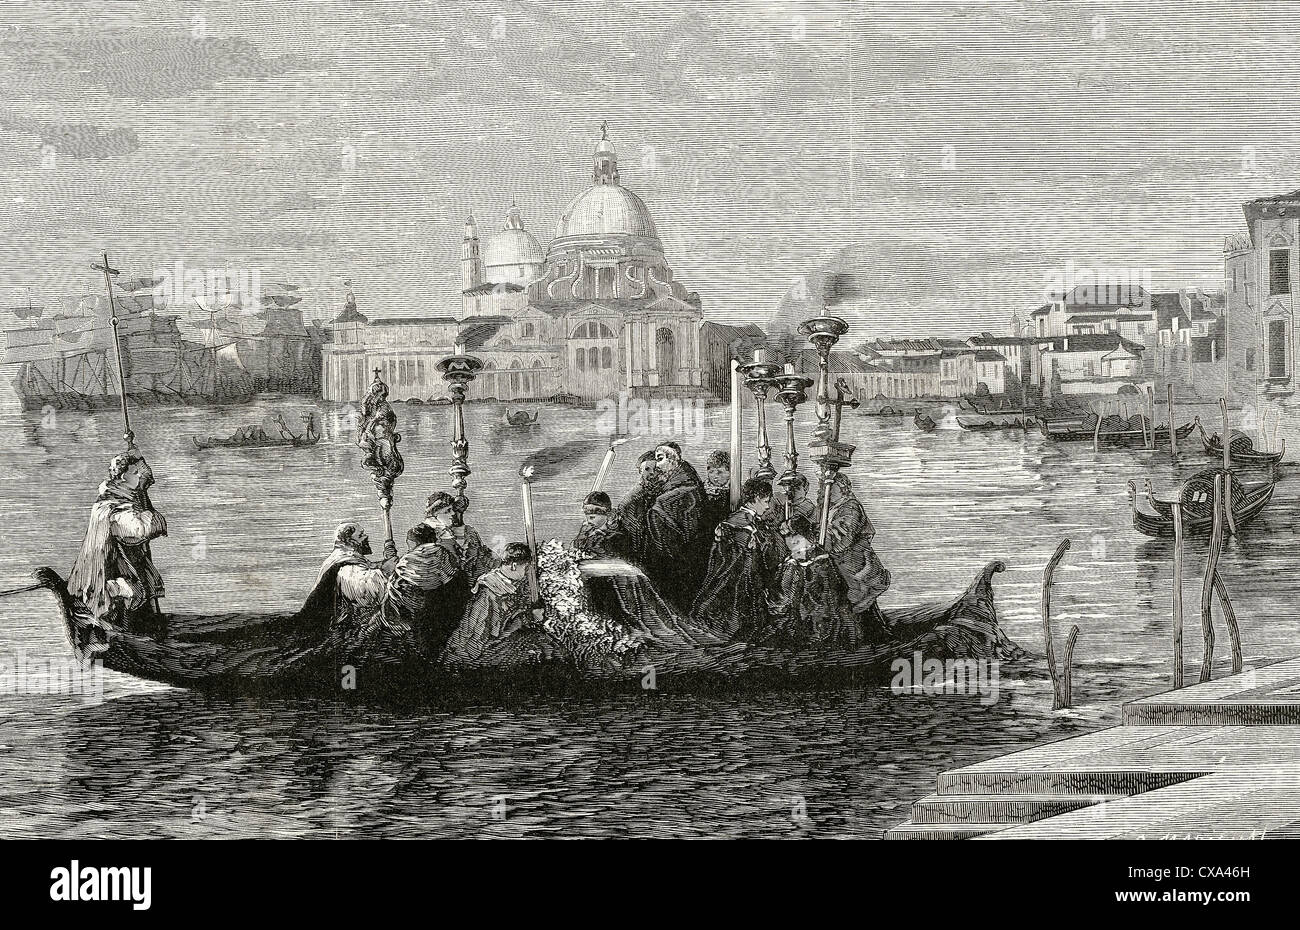 Italien. Venedig. des 19. Jahrhunderts. Trauerzug. Kupferstich von Marichal "Abbildung", 1880. Stockfoto